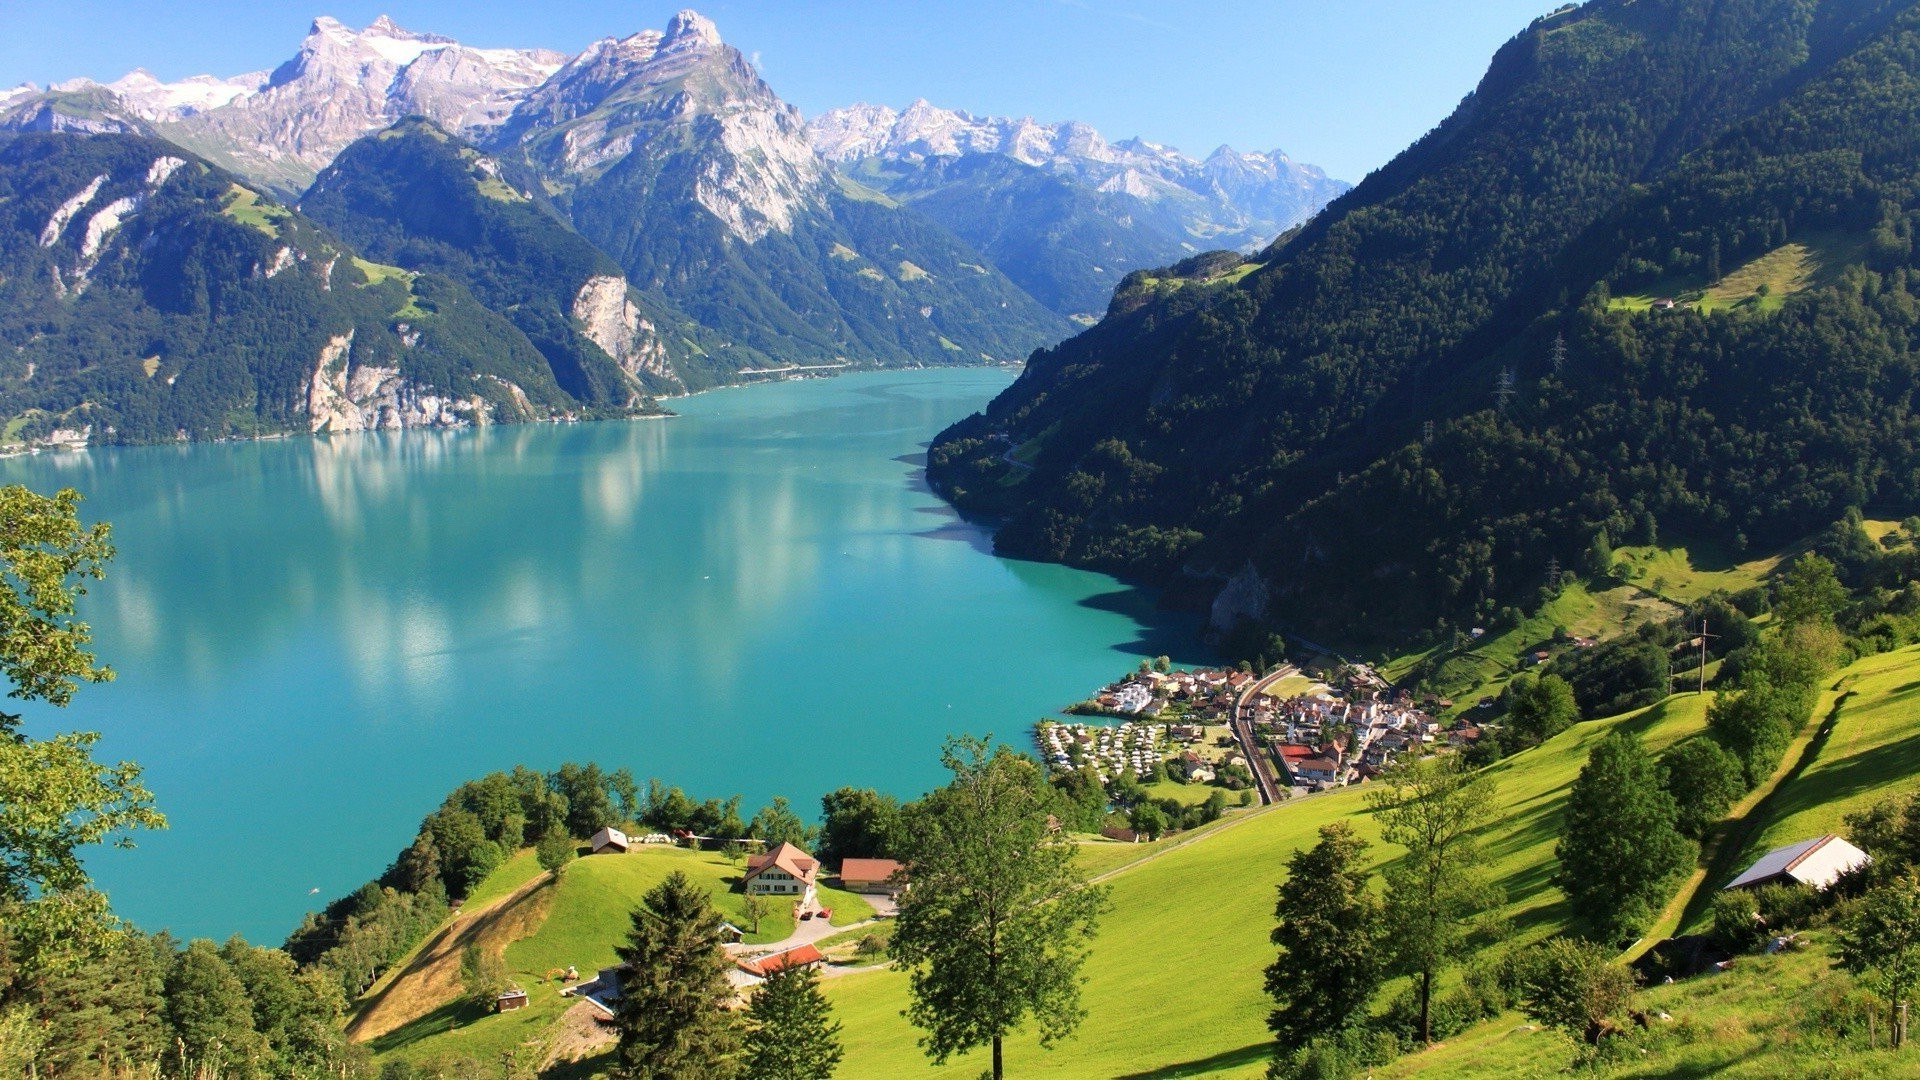 landscape, Lake Lucerne, Lake, Mountains, Nature, Switzerland